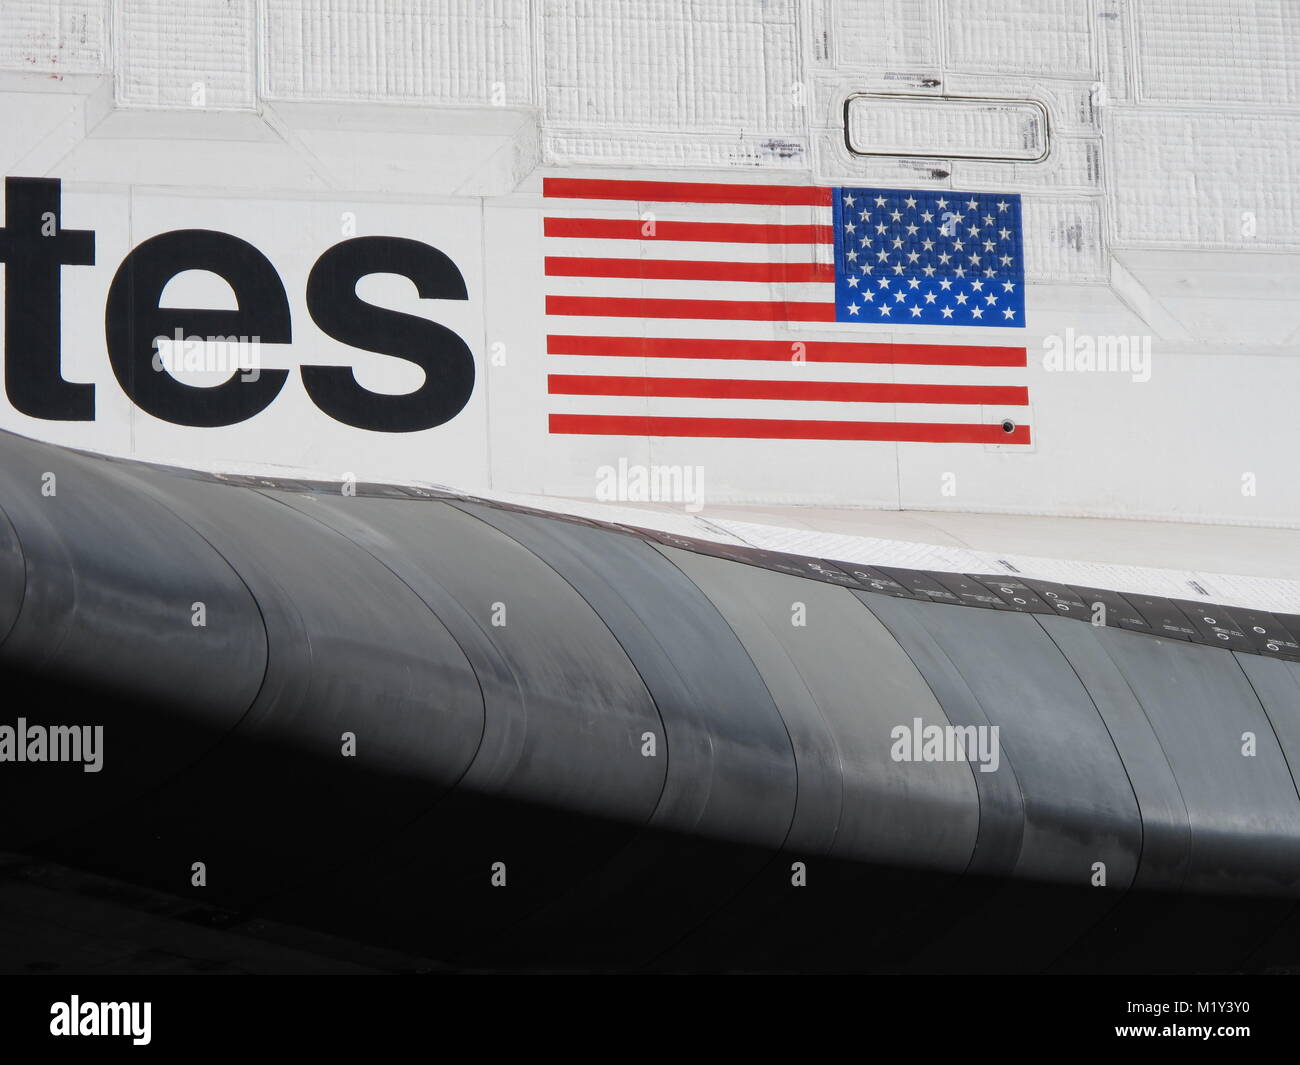 Los Angeles, CA - Ott. 13, 2012: Closeup dettaglio della NASA Endeavour space shuttle ala e corpo durante la parata di pensionamento per il veicolo spaziale. Foto Stock